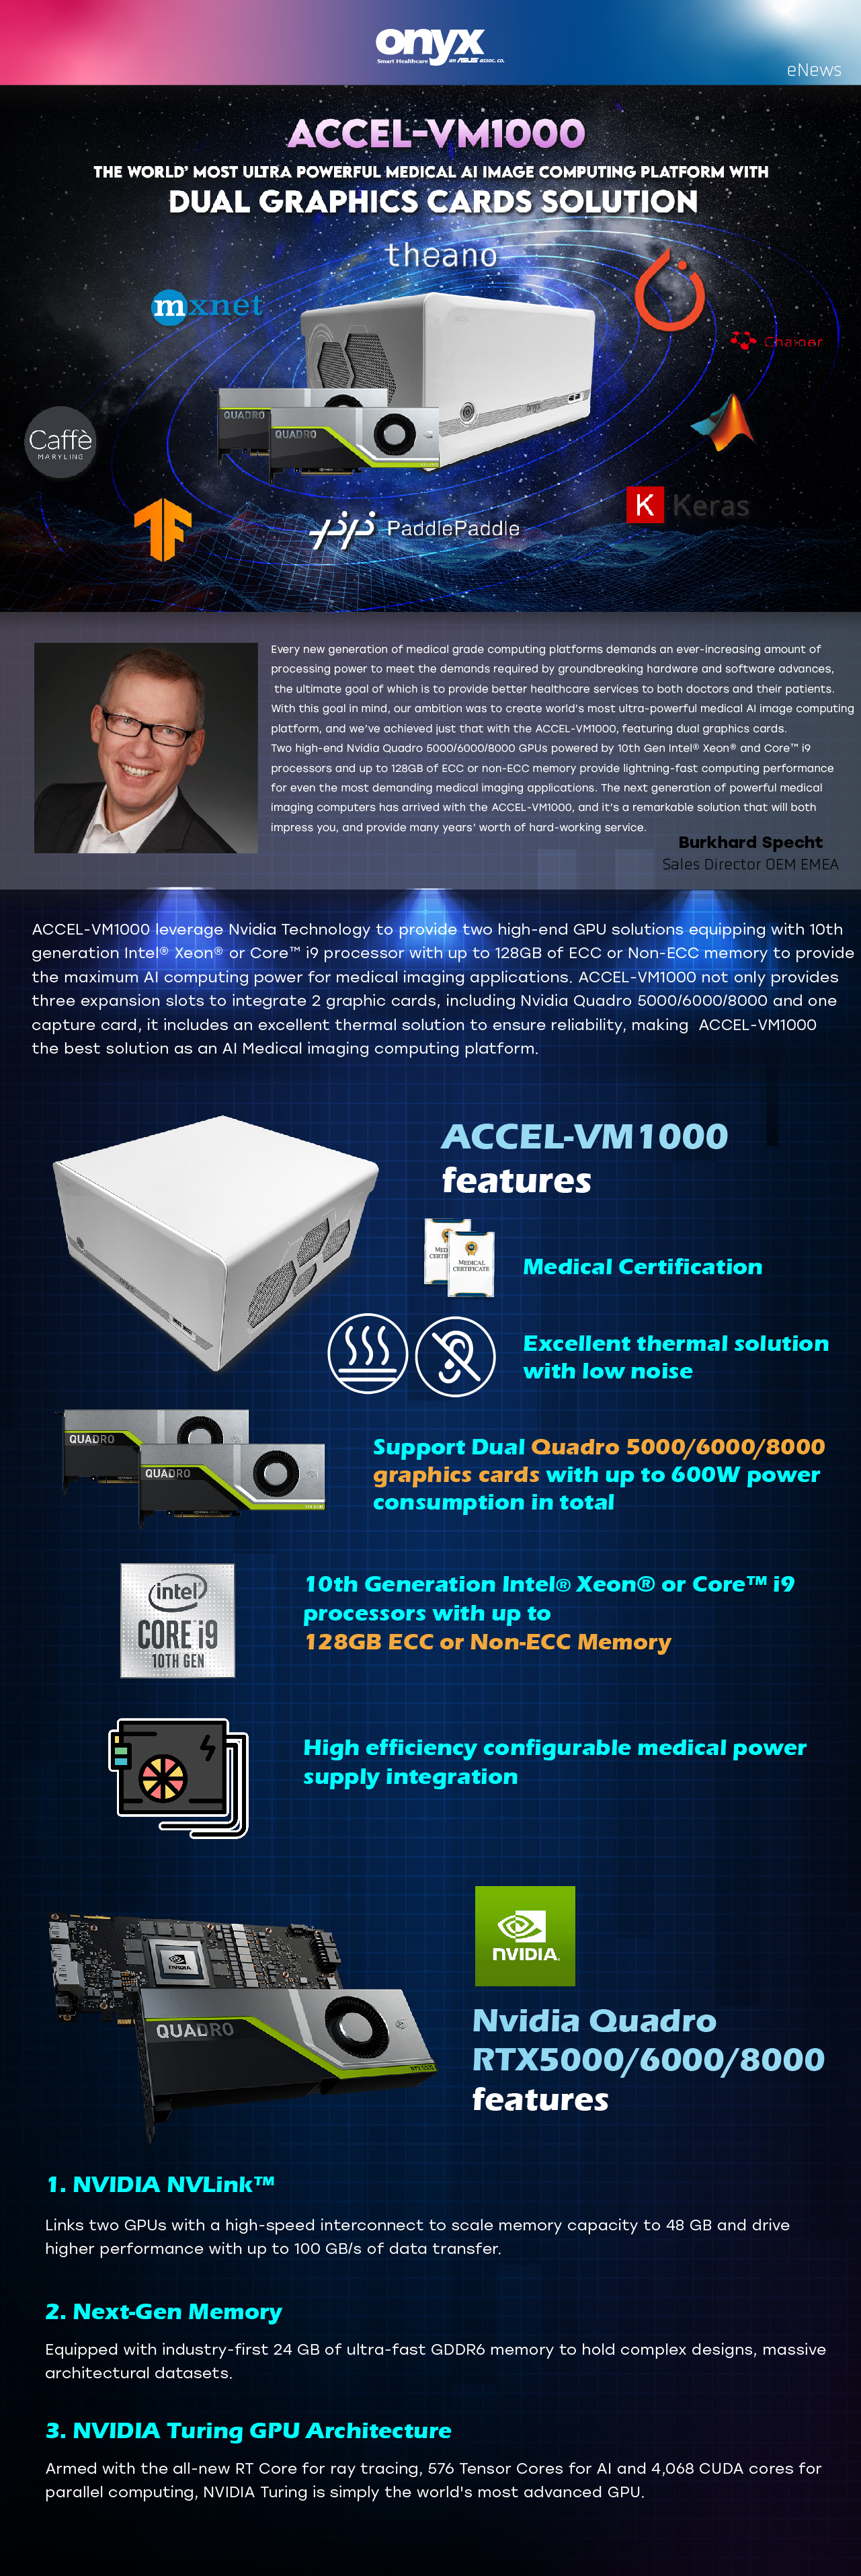 Accel-VM1000